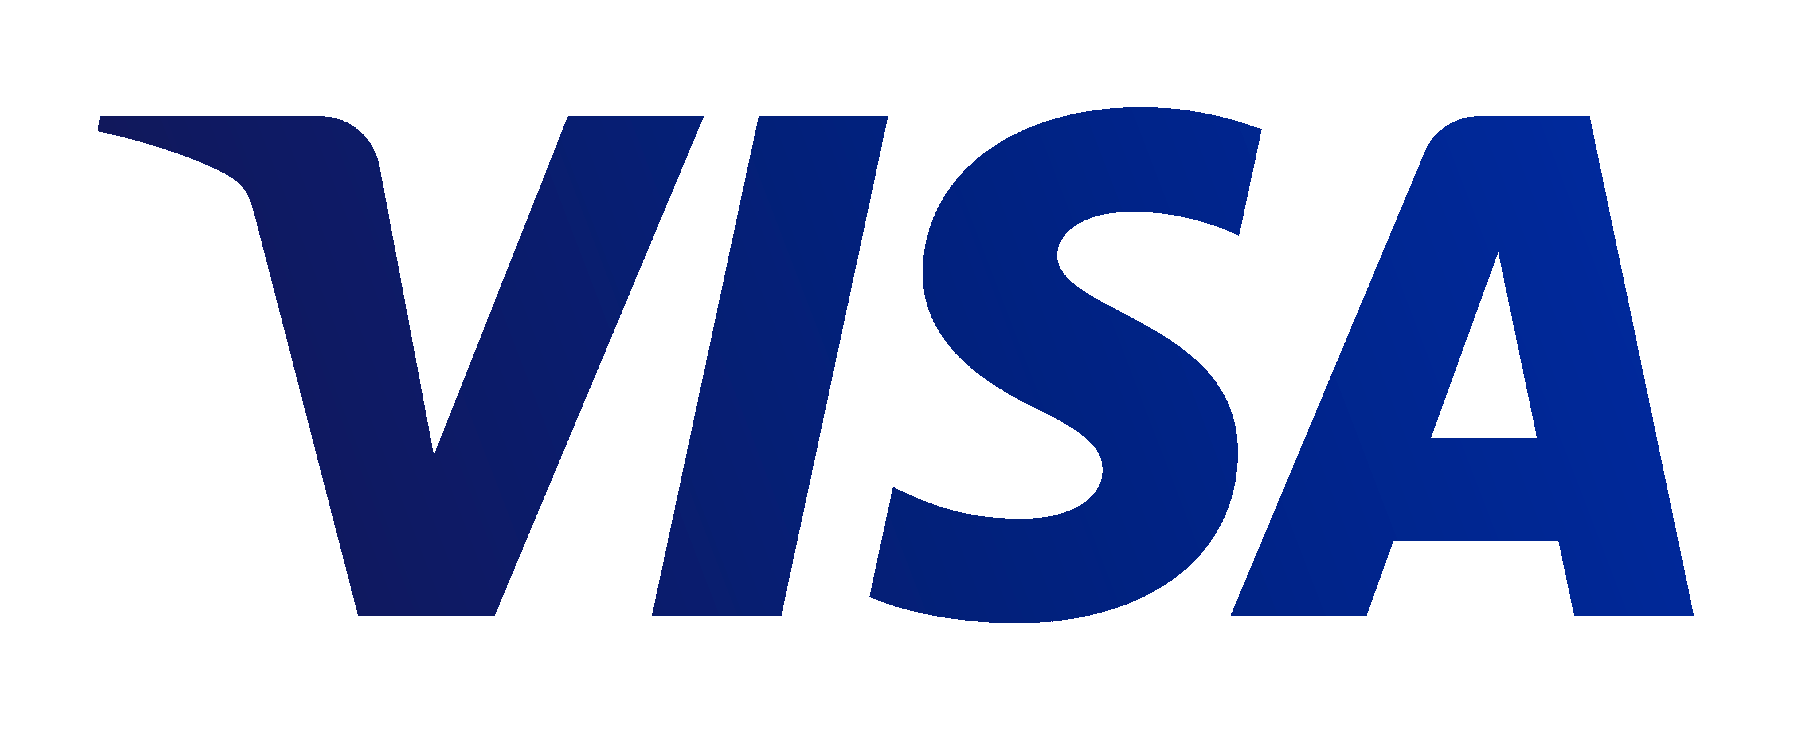 Visa Card Logo Png Images Fre